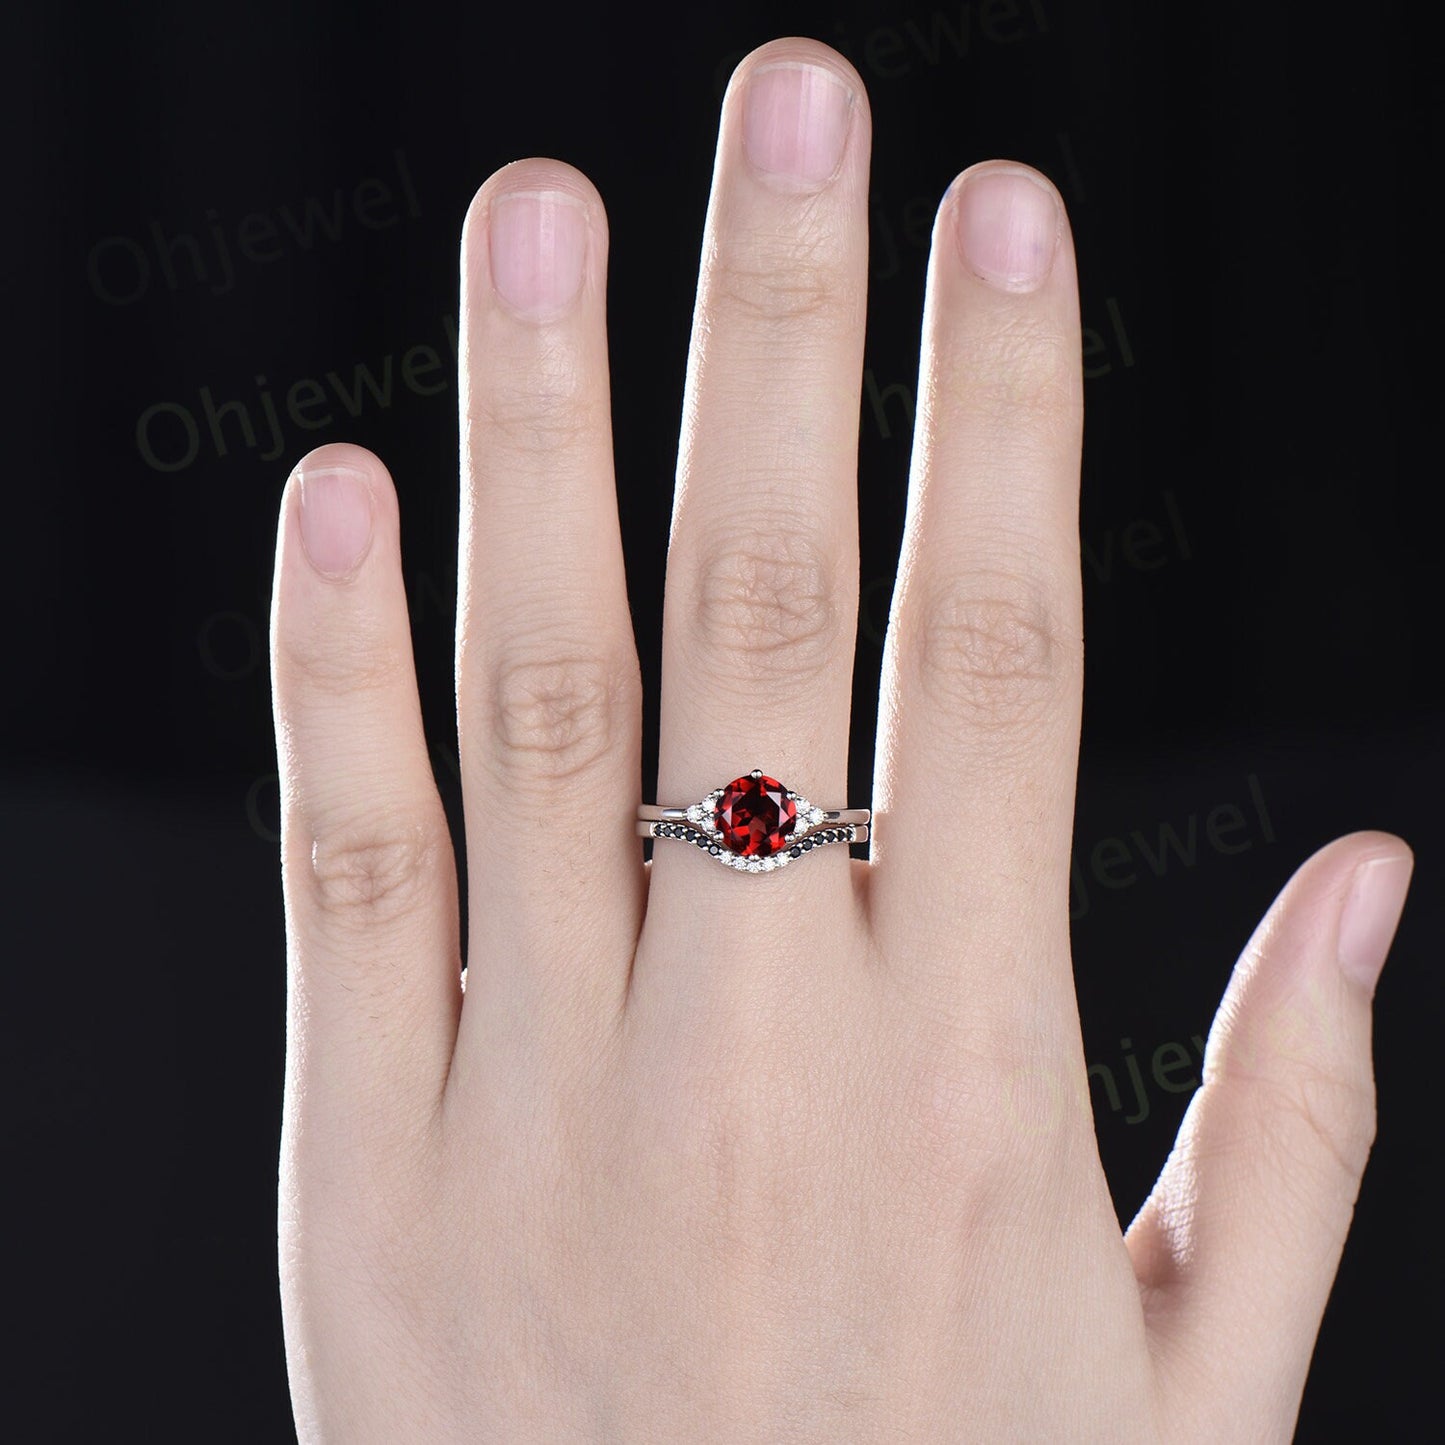 Round cut red garnet ring white gold black diamond ring 6 prong unique engagement ring women gemstone stacking wedding bridal ring set